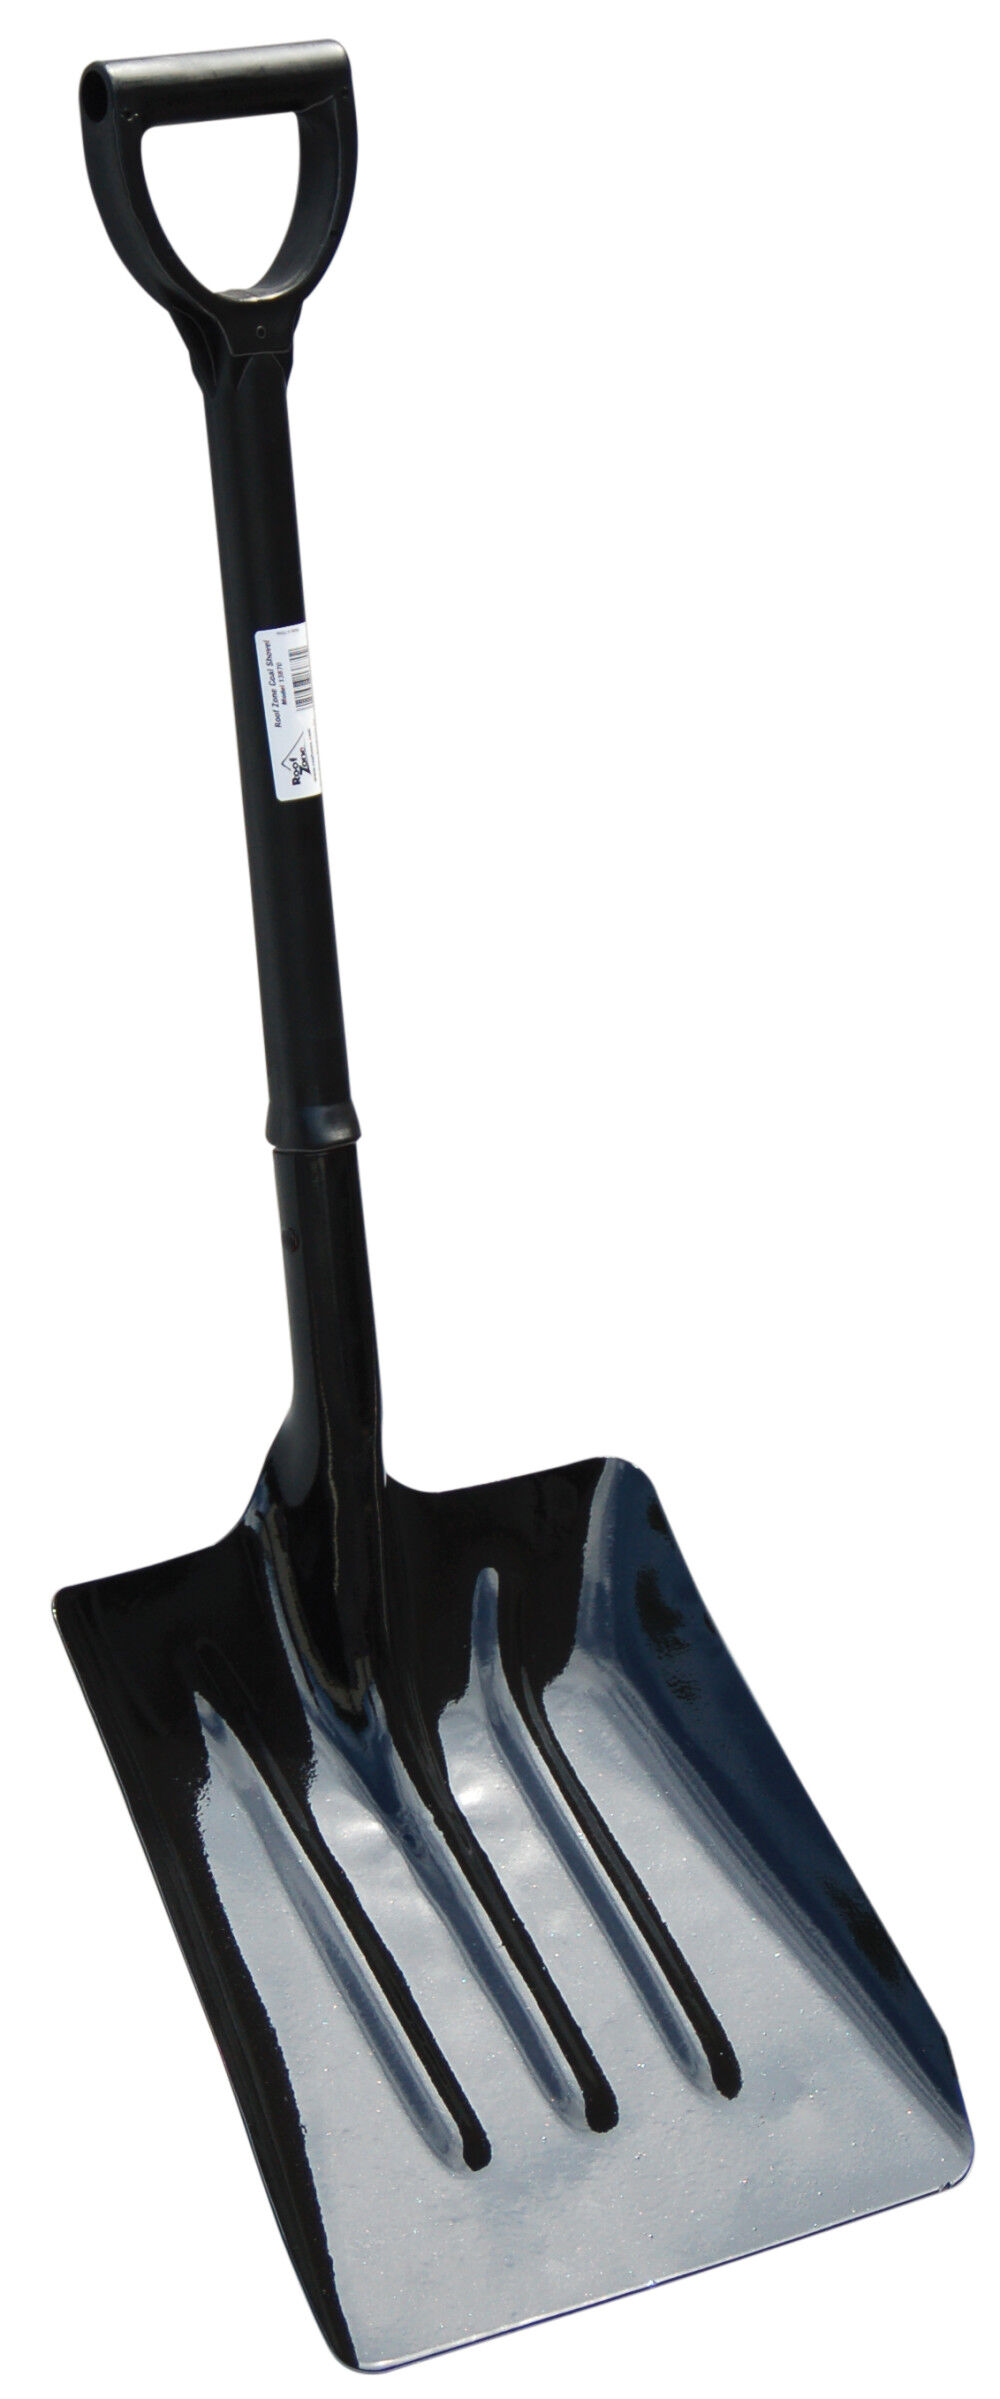 Tranzsporter Coal Shovel/Scoop Short D Handle Fiberglass